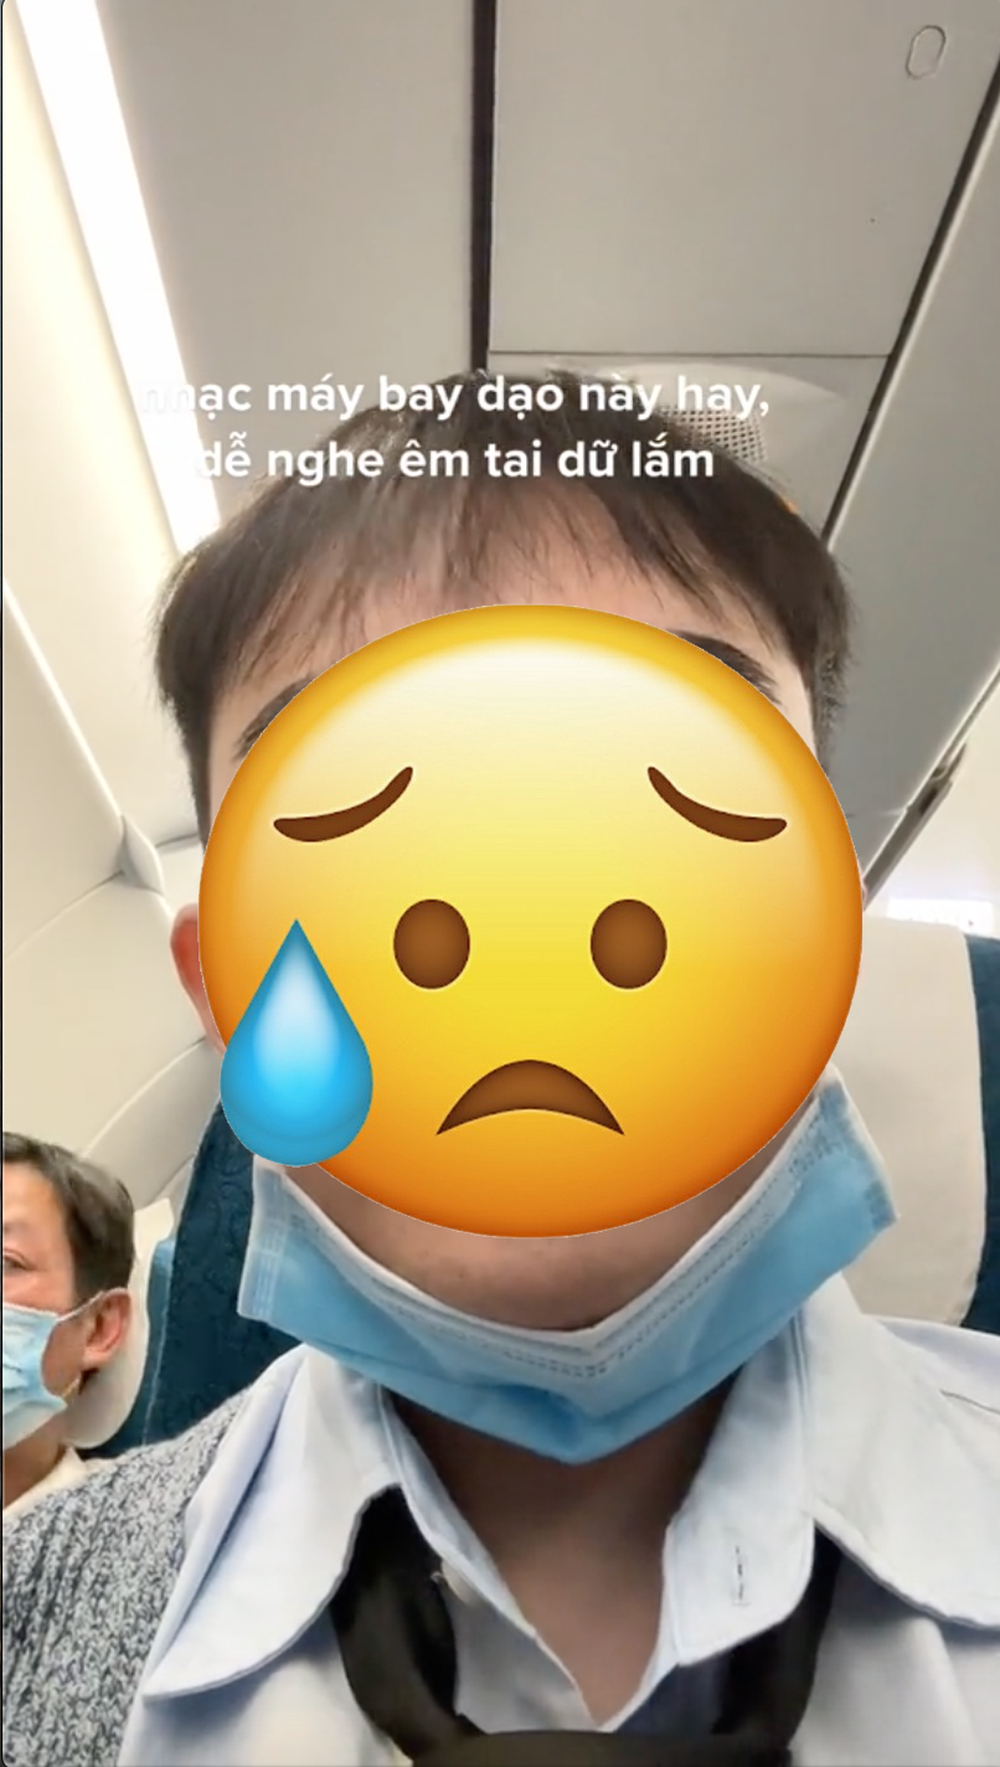 Trẻ em khóc ầm ĩ trên máy bay làm ảnh hưởng đến hành khách khiến dân tình tranh cãi: Không có người sai, chỉ có người cần được thông cảm